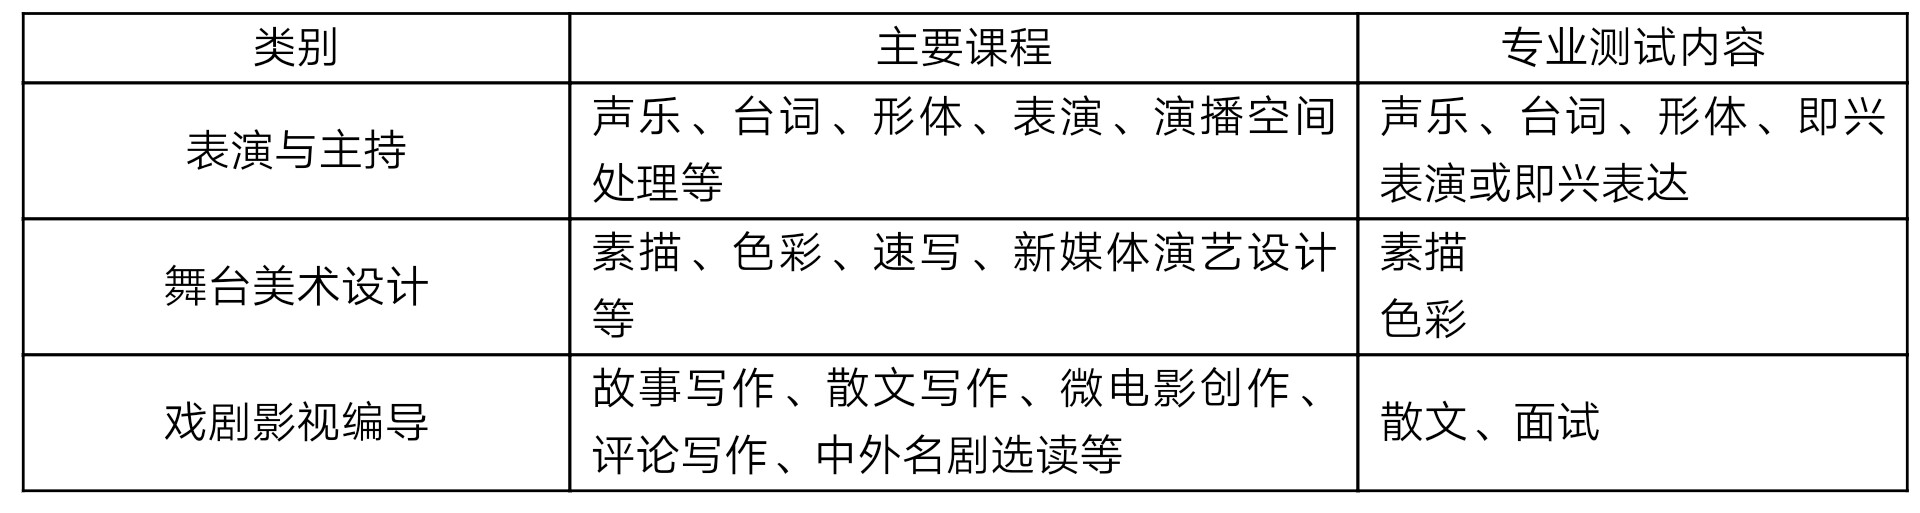 上海戏剧学院附属中学可面向全国招生，需要什么条件